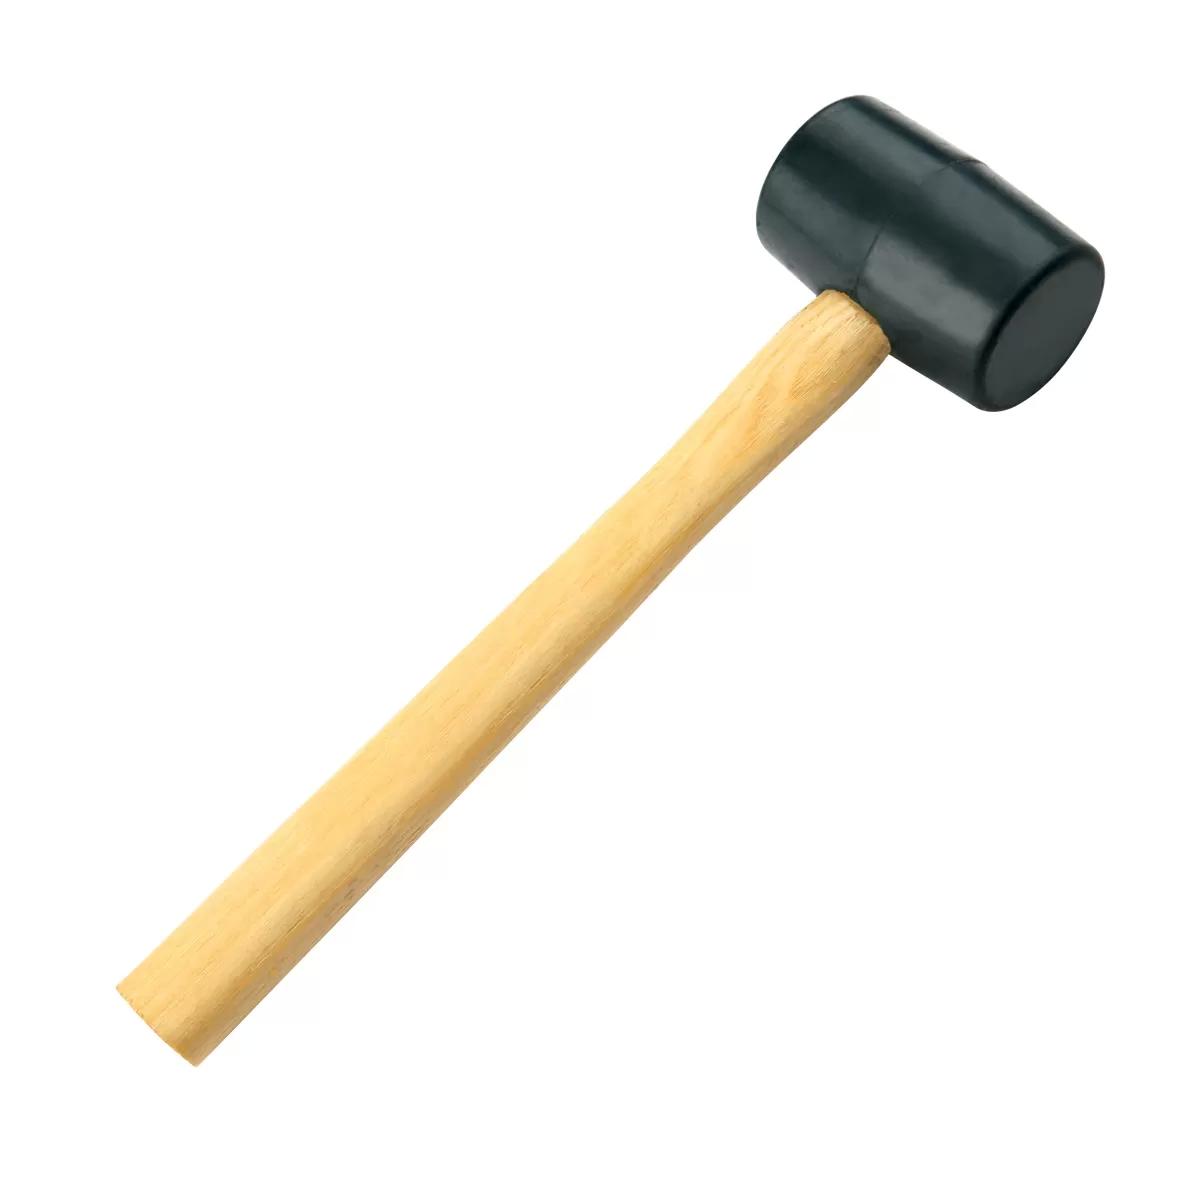 Rubber hammer, wood handle 250gr/8oz 